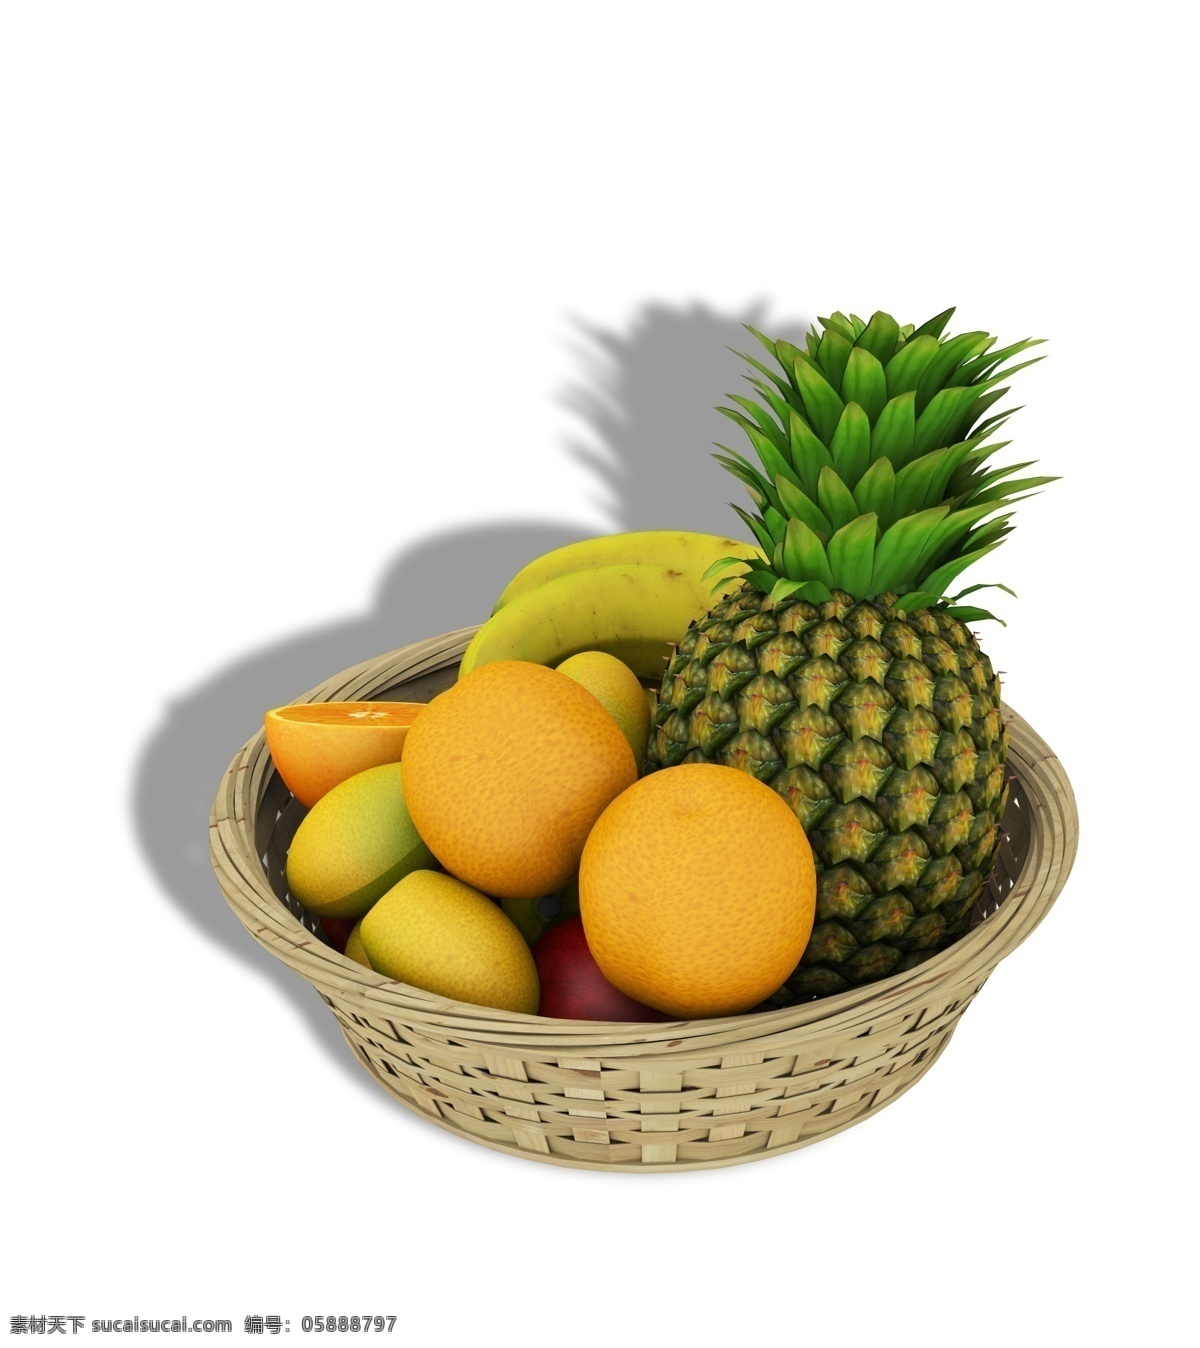 一大 筐 竹篮 各种 水果 一大筐 各种水果 果实 蔬果 新鲜 一堆水果 营养美味 菠萝 香蕉 橘子 橙子